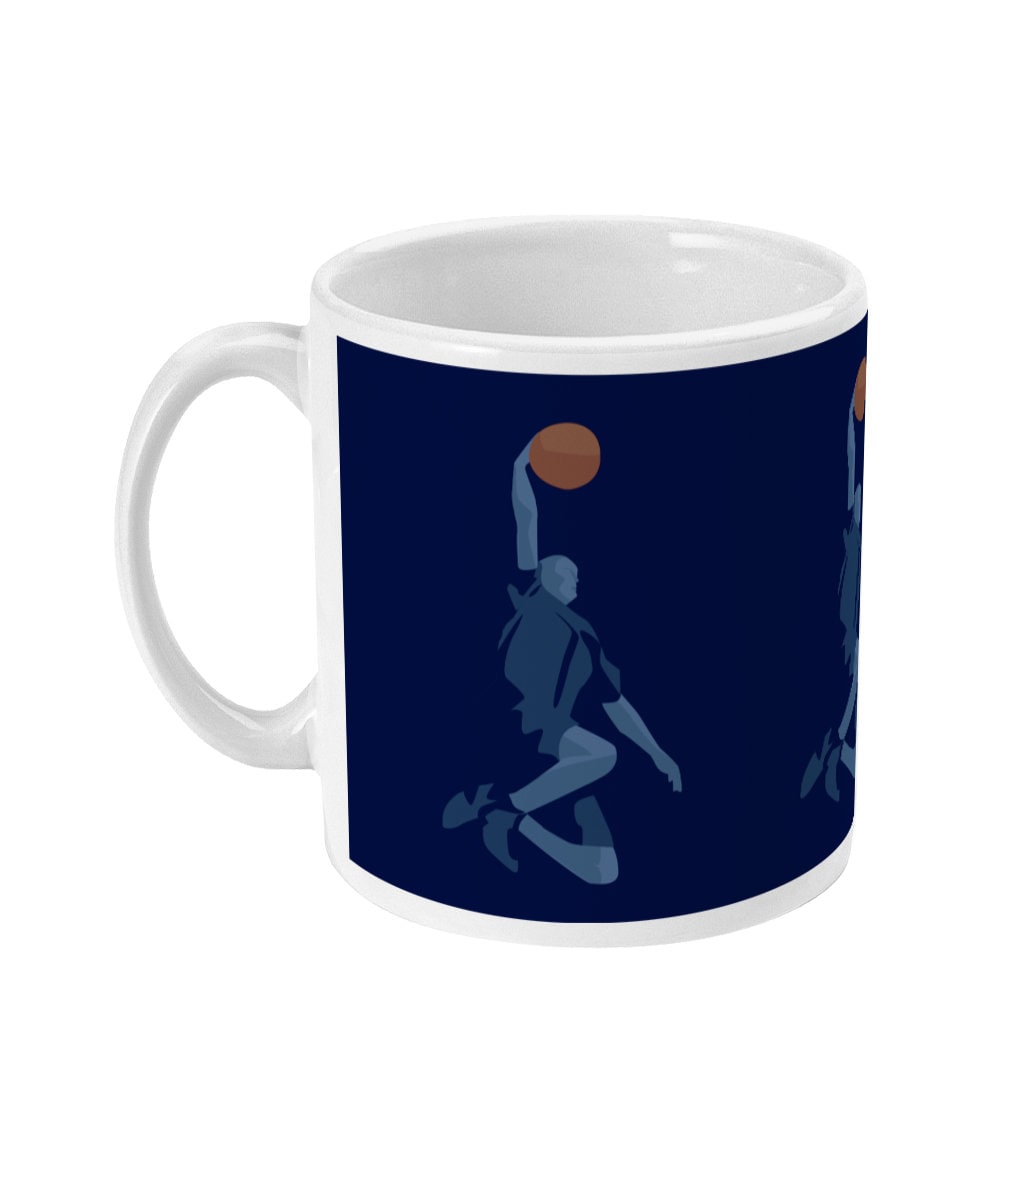 Tasse ou mug basketball "Le dunk" - Personnalisable